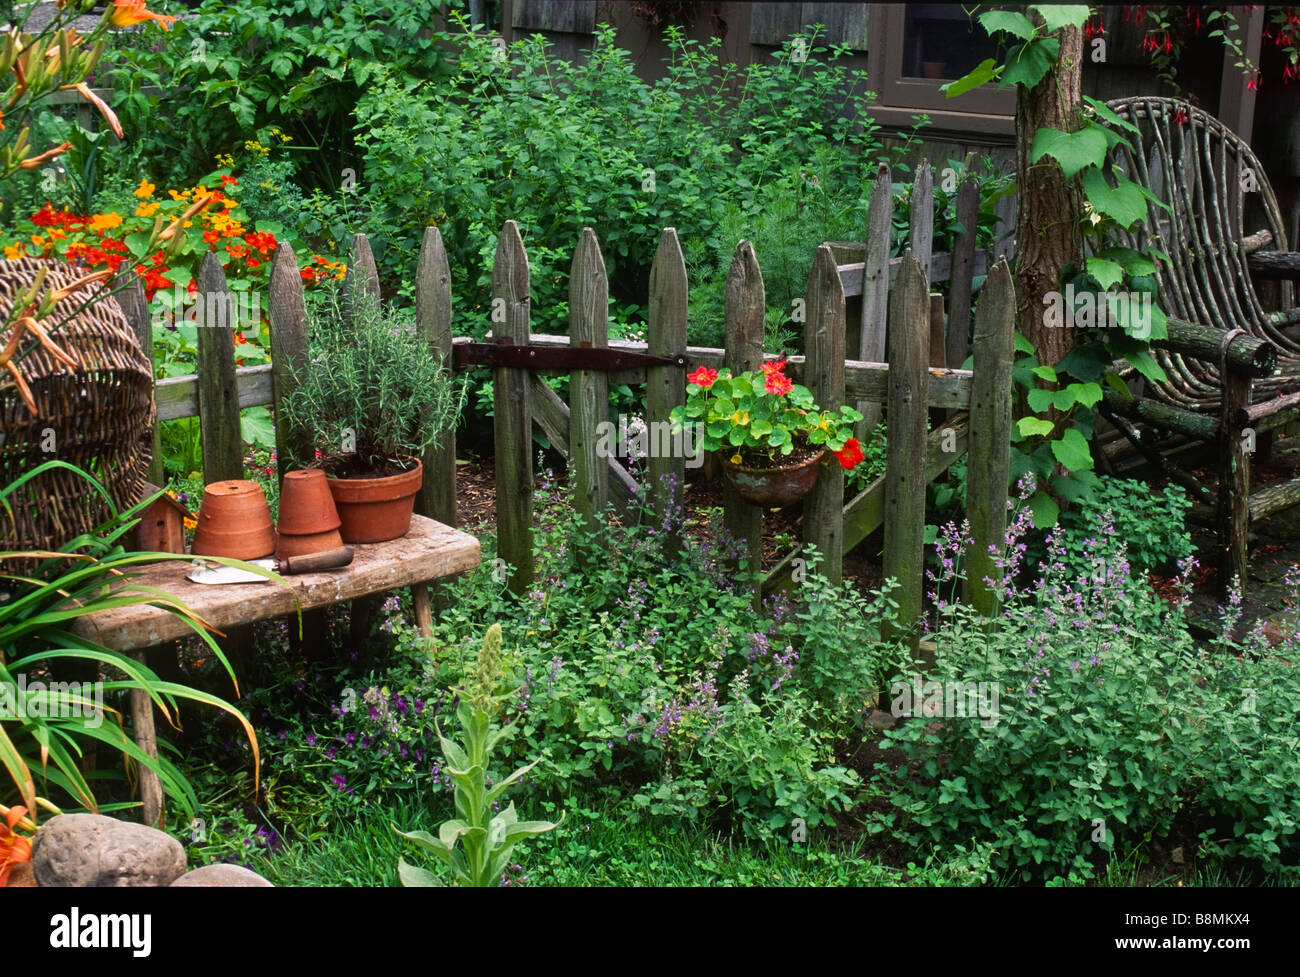 Articoli da giardinaggio comprendente un potted rosmarino poggiano su un banco rustico nella parte anteriore di un weathered Picket Fence in un paese giardino. Foto Stock